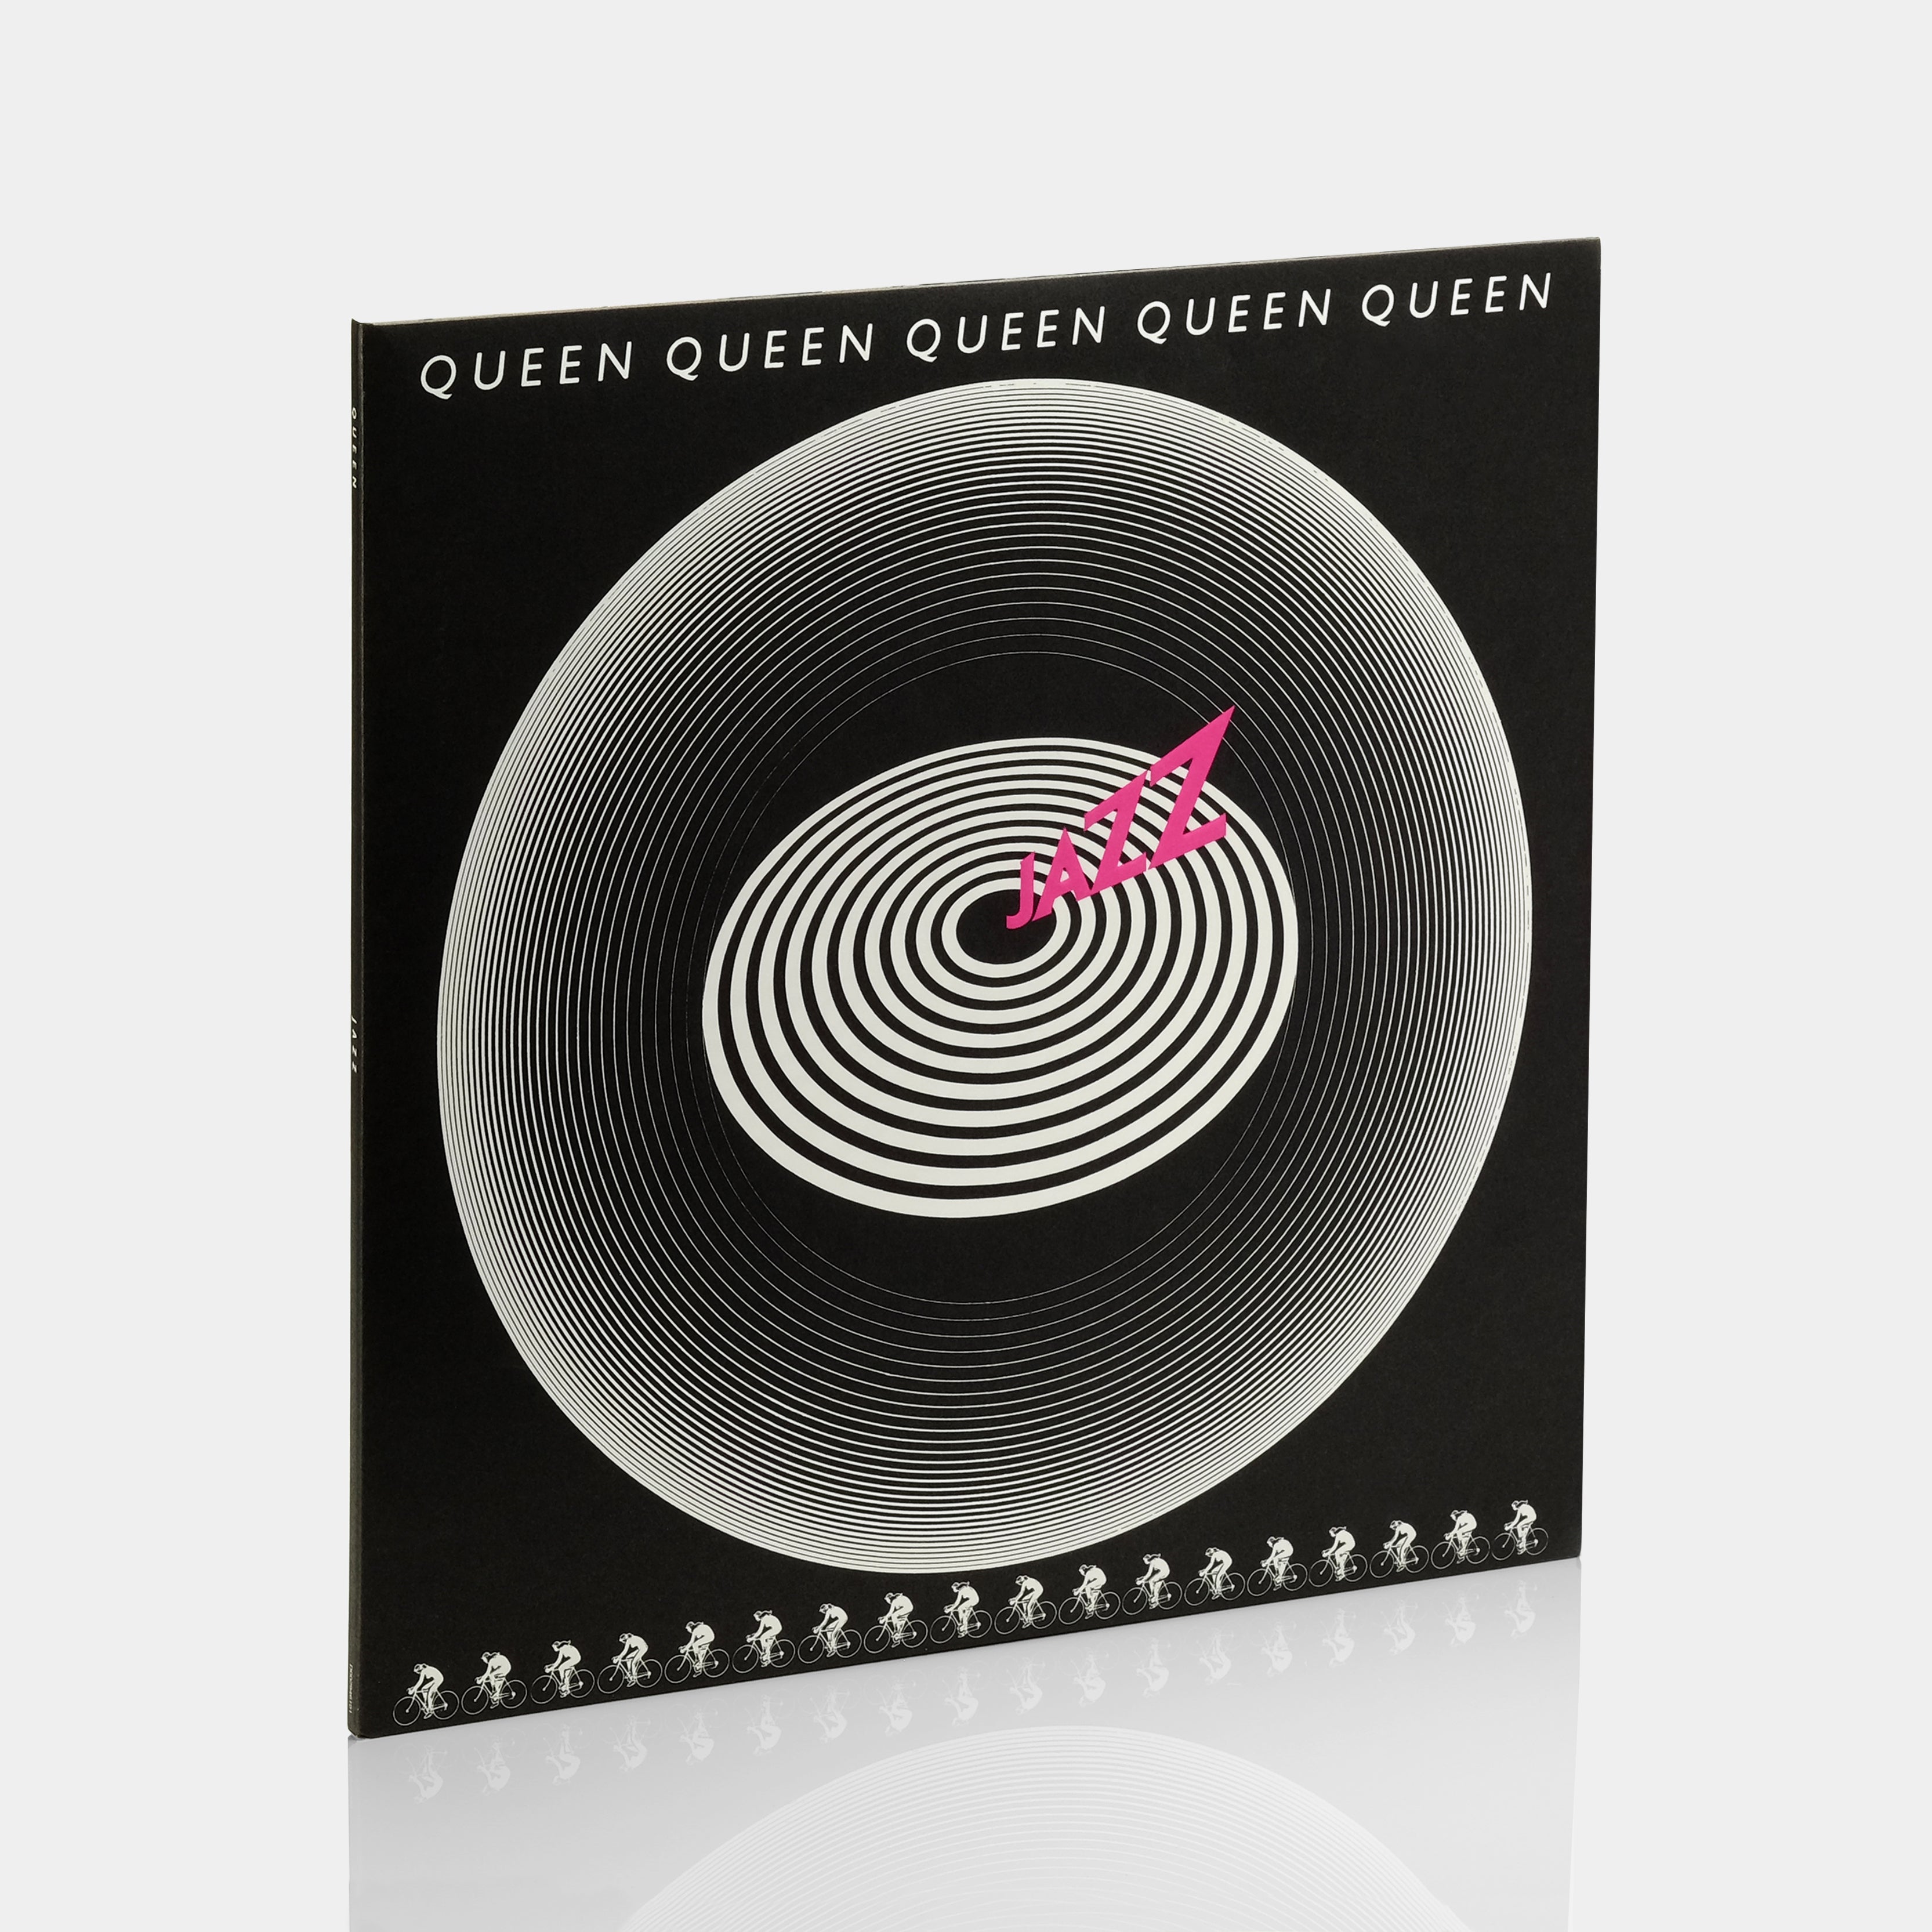 Queen - Jazz LP Vinyl Record